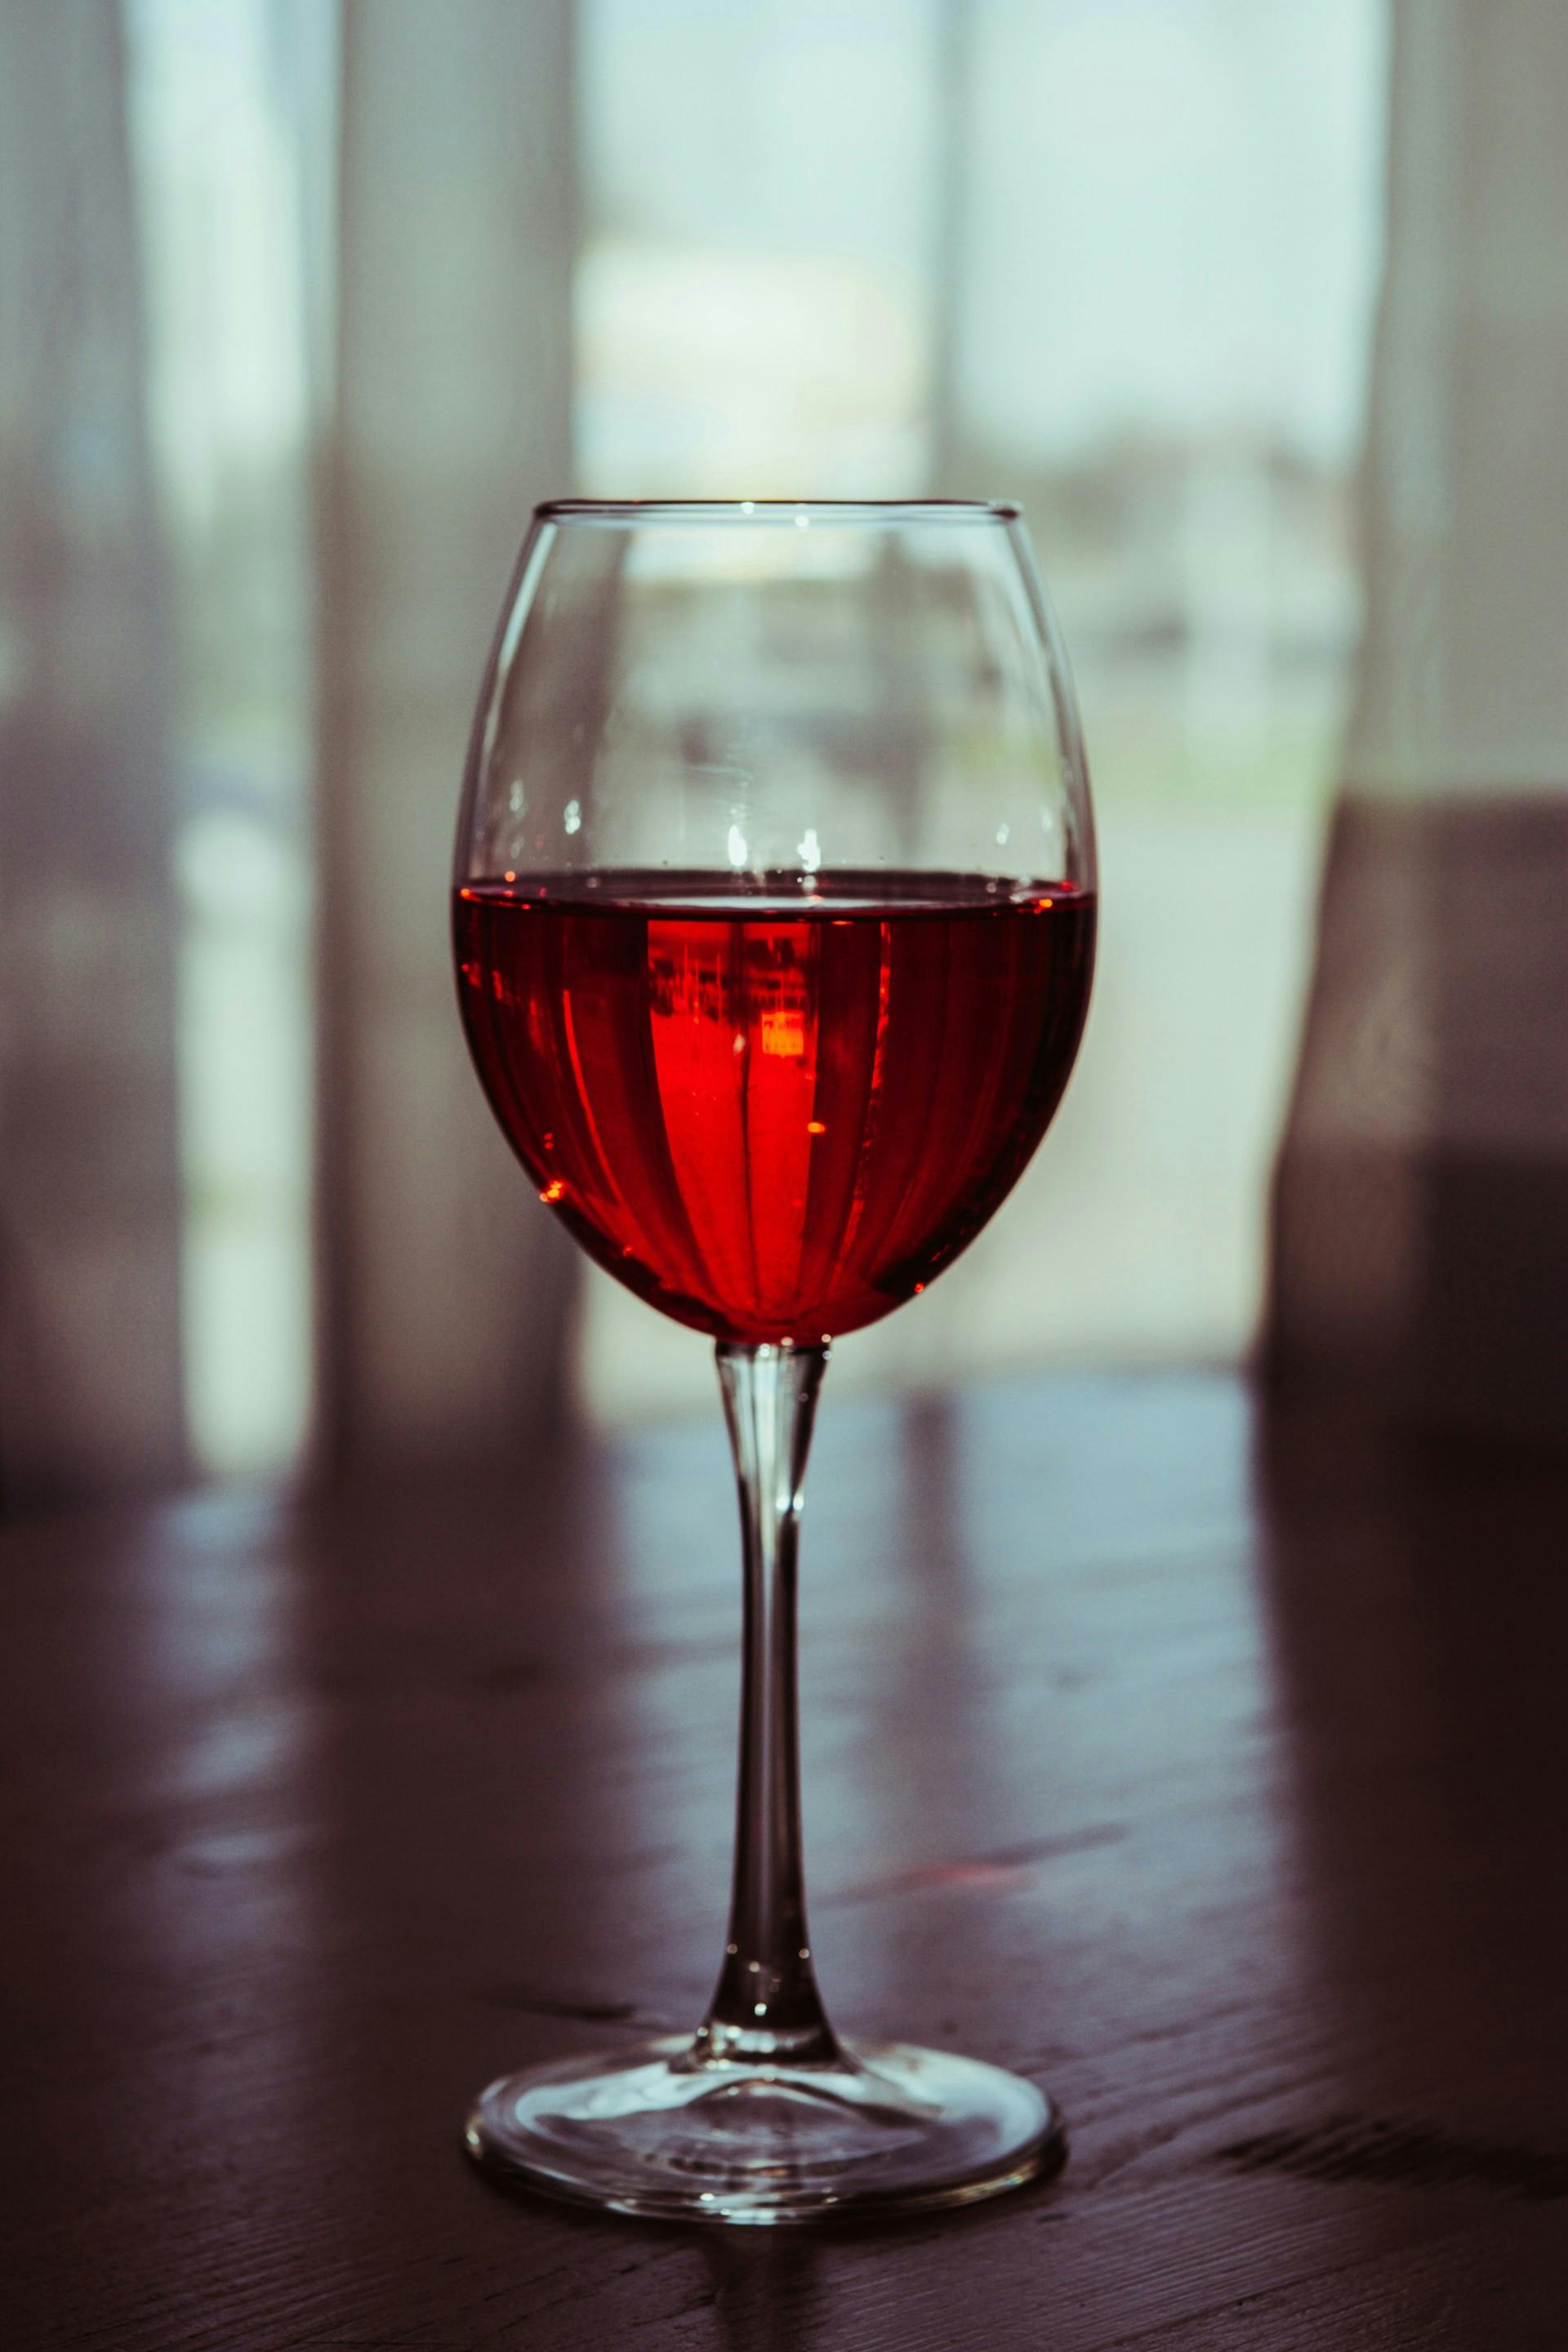 Ein Glas gefüllt mit roter Flüssigkeit steht in der Mitte des Bildes.